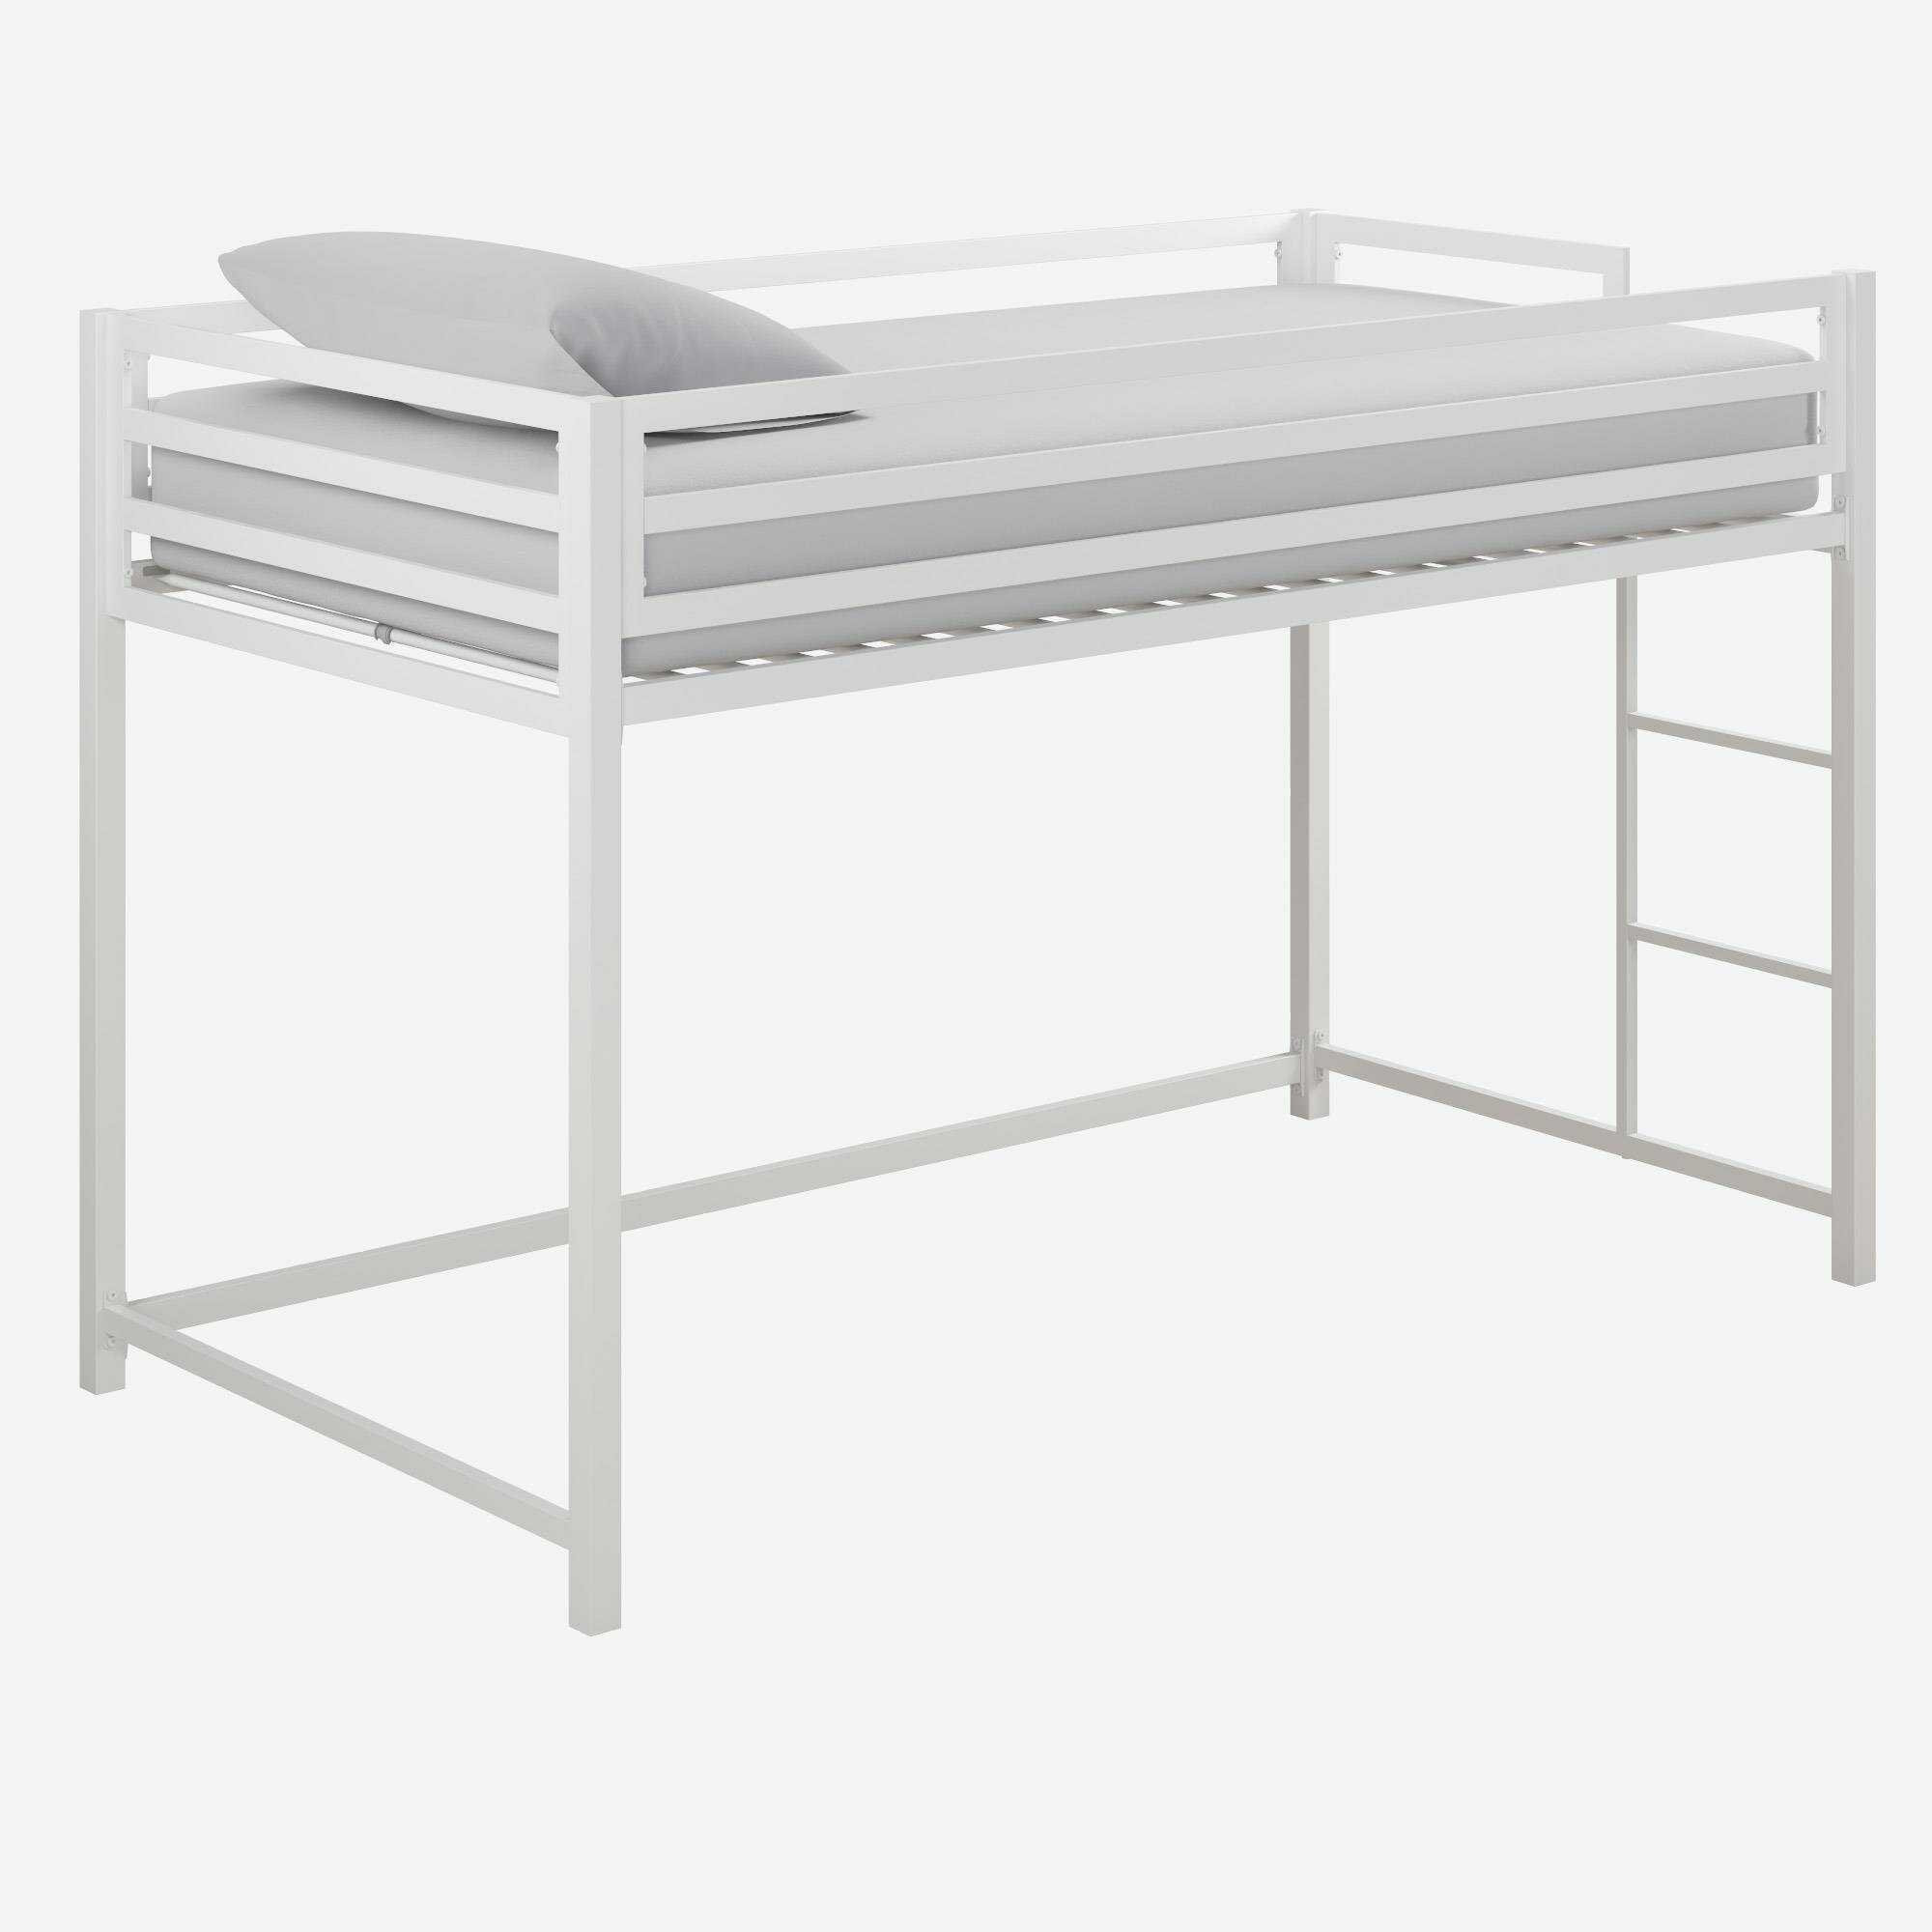 simoneau loft bed with desk